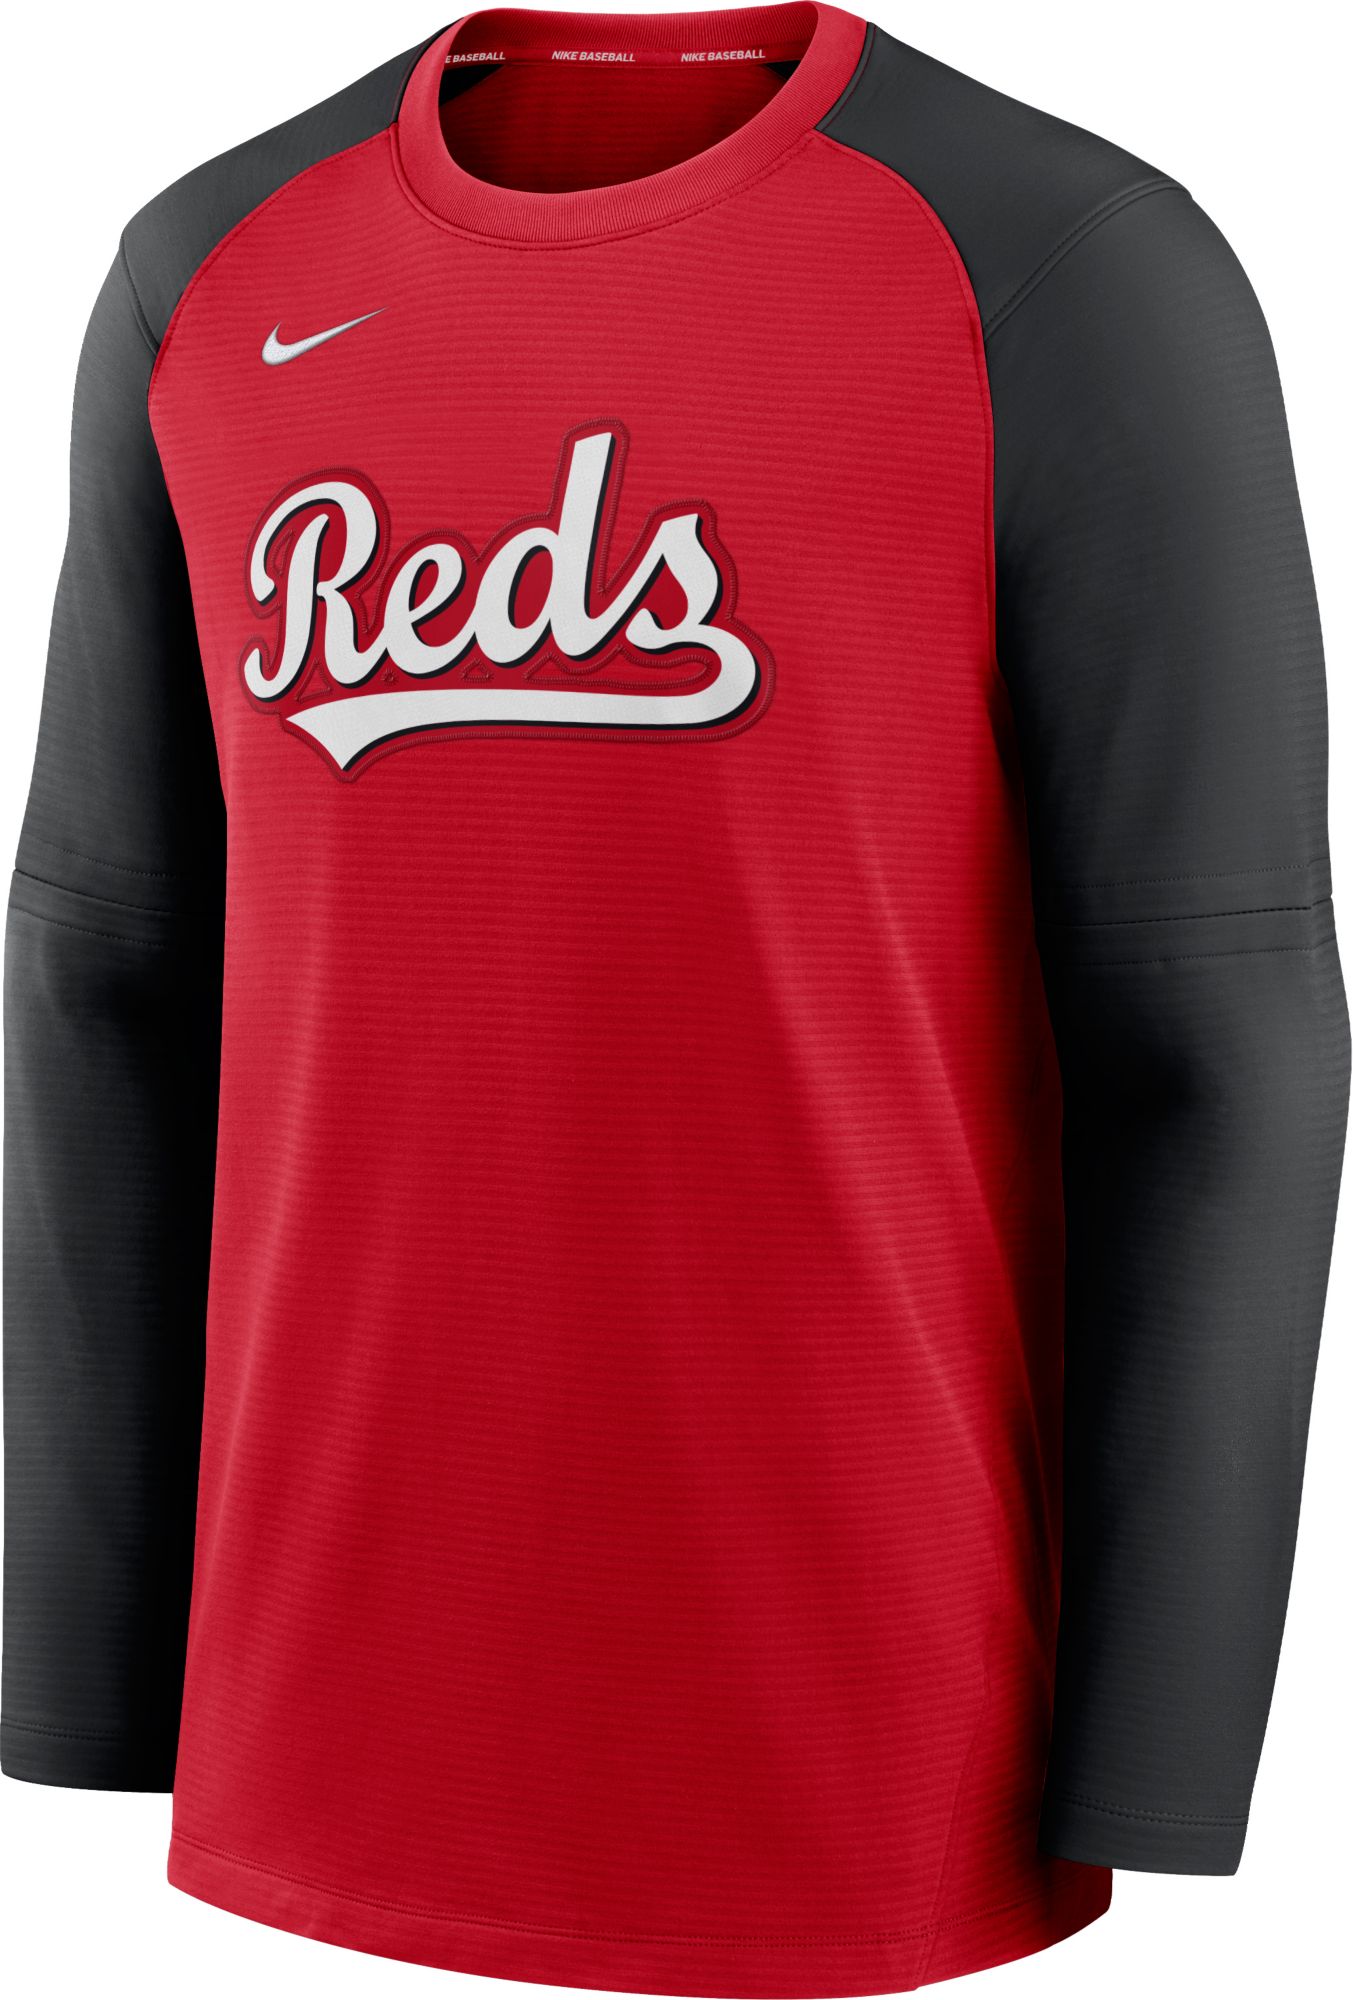 Genuine Merchandise Cincinnati Reds Jersey